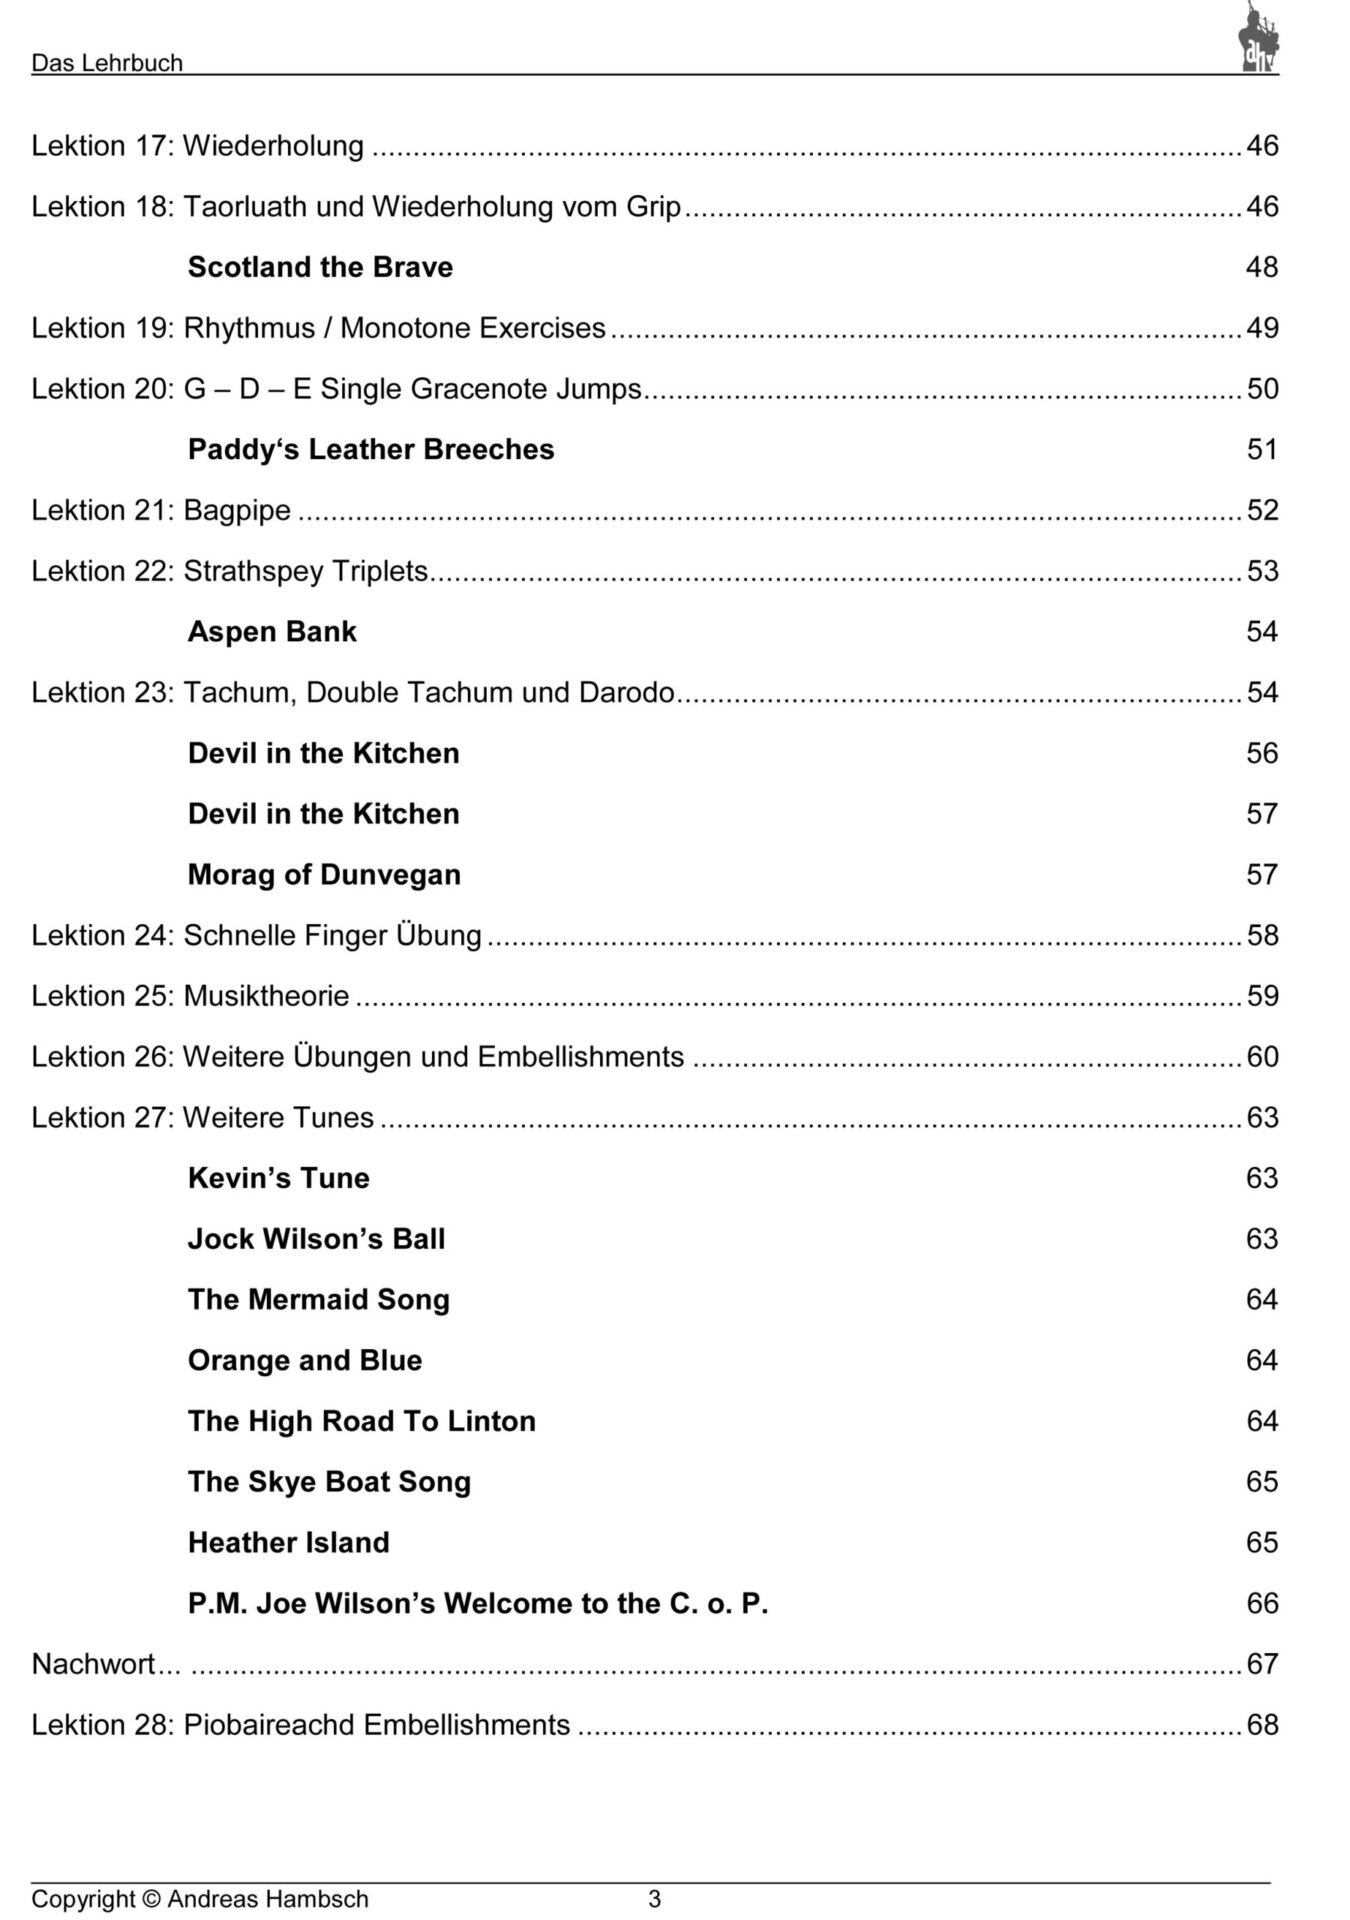 Dudelsack-Lehrbuch-Inhaktsverzeichnis-2